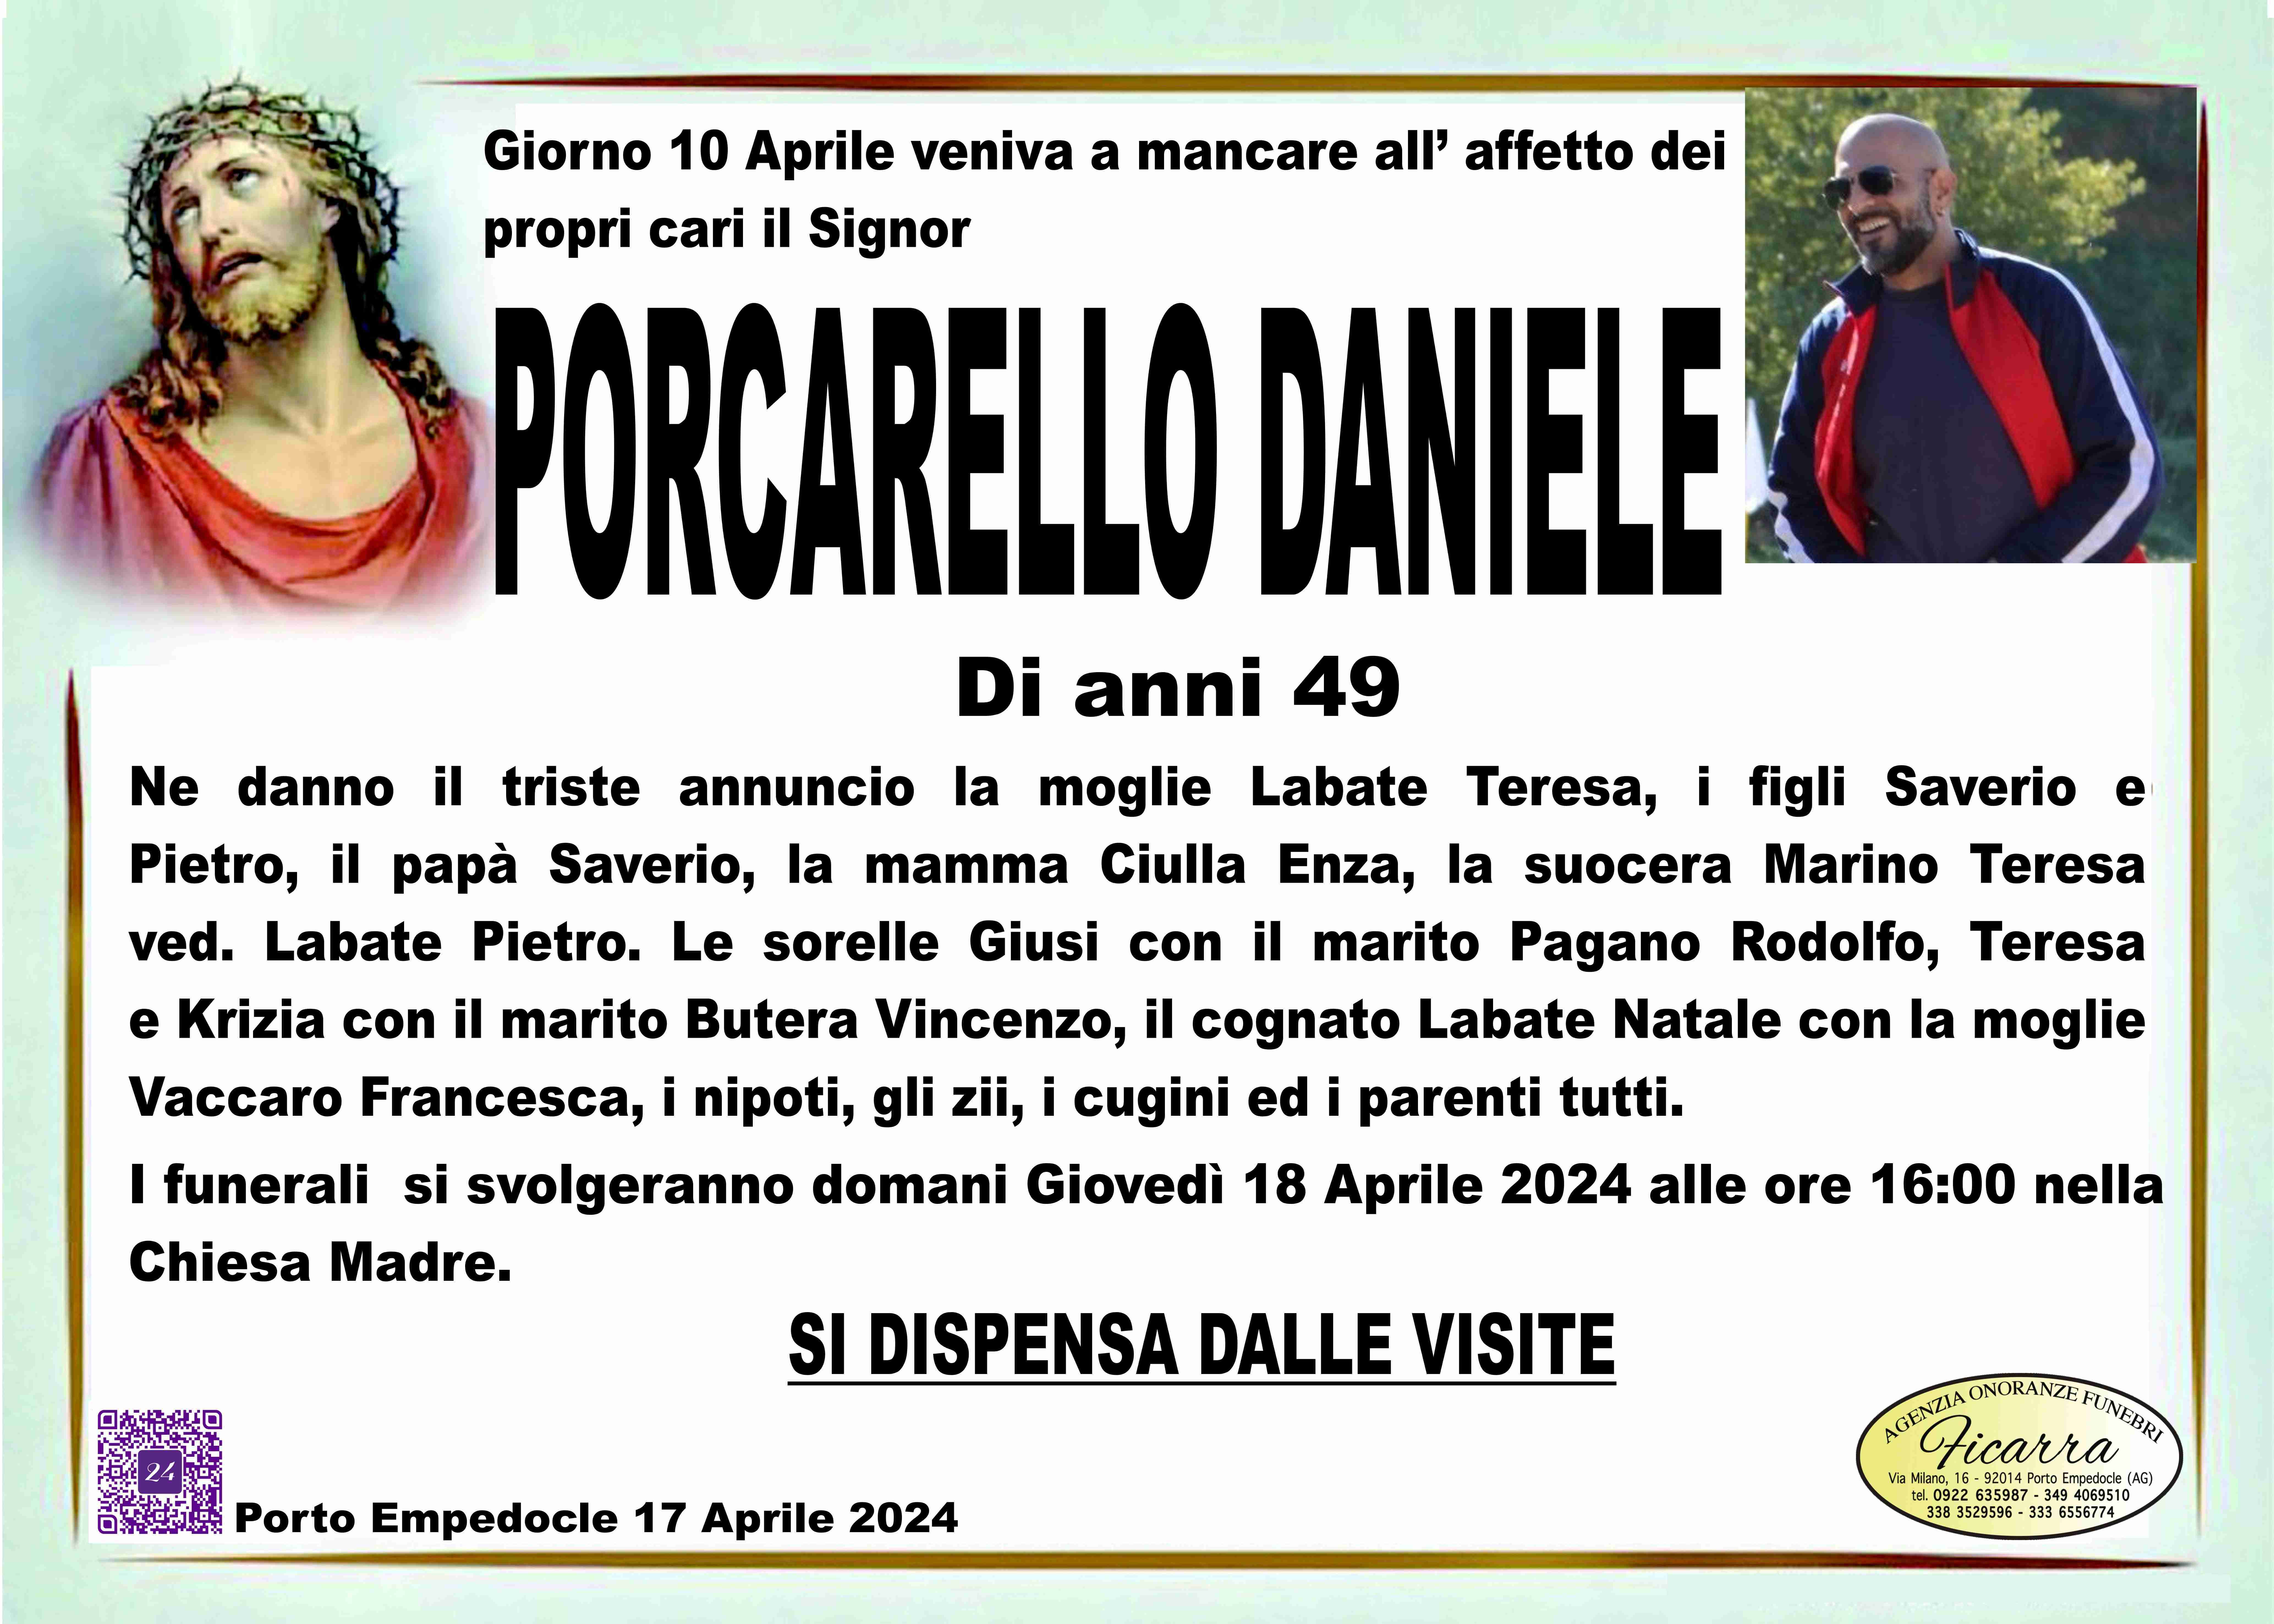 Daniele Porcarello